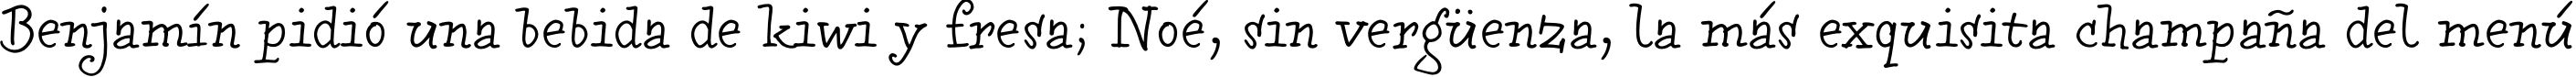 Пример написания шрифтом Bowman текста на испанском